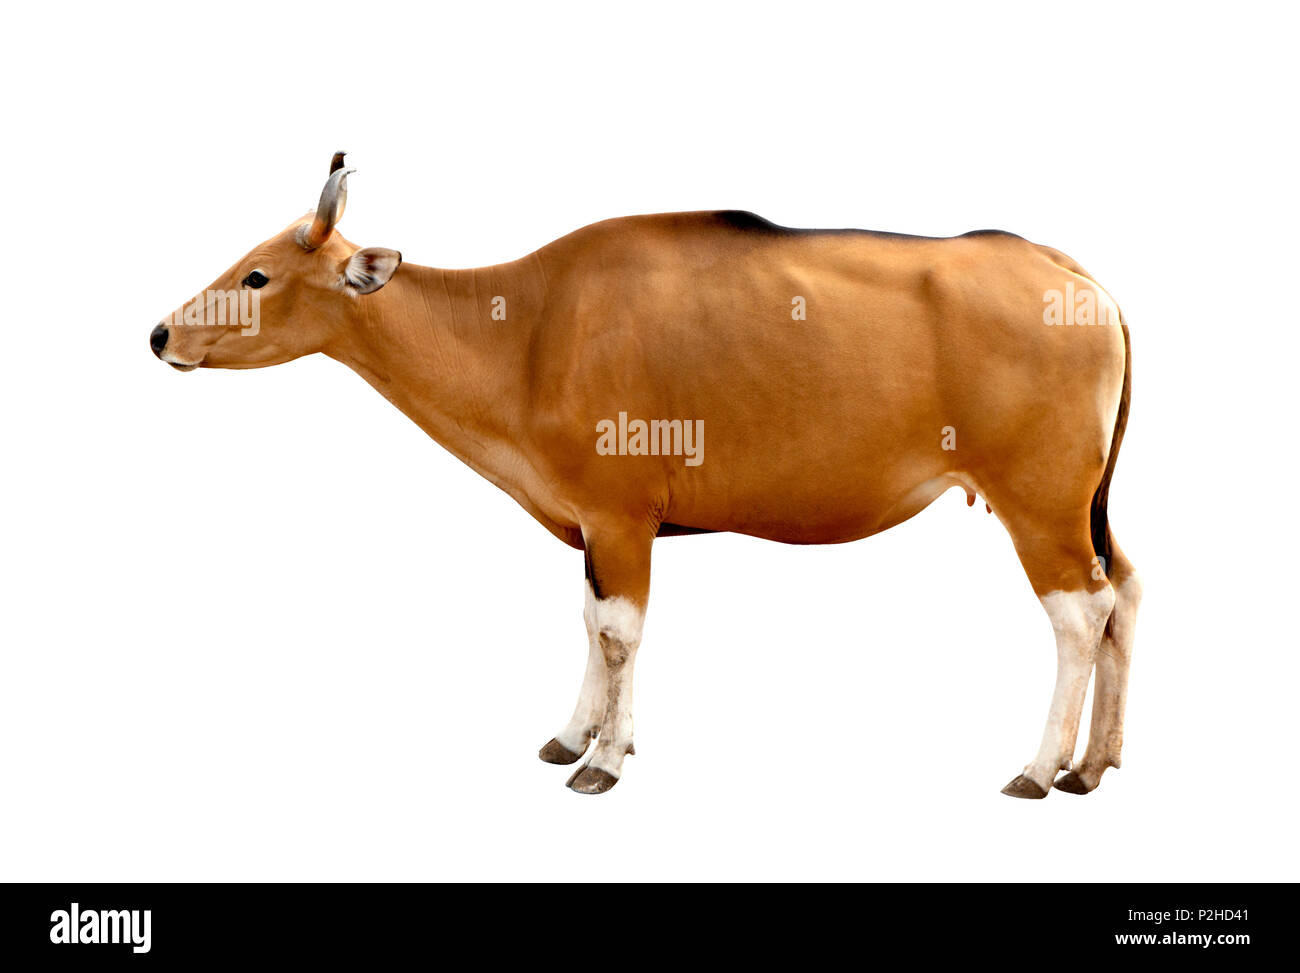 Bos javanicus Kopf. Roten Ochsen ist eine wilde Kuh. Kopf auf weißem Hintergrund isolieren. Stockfoto